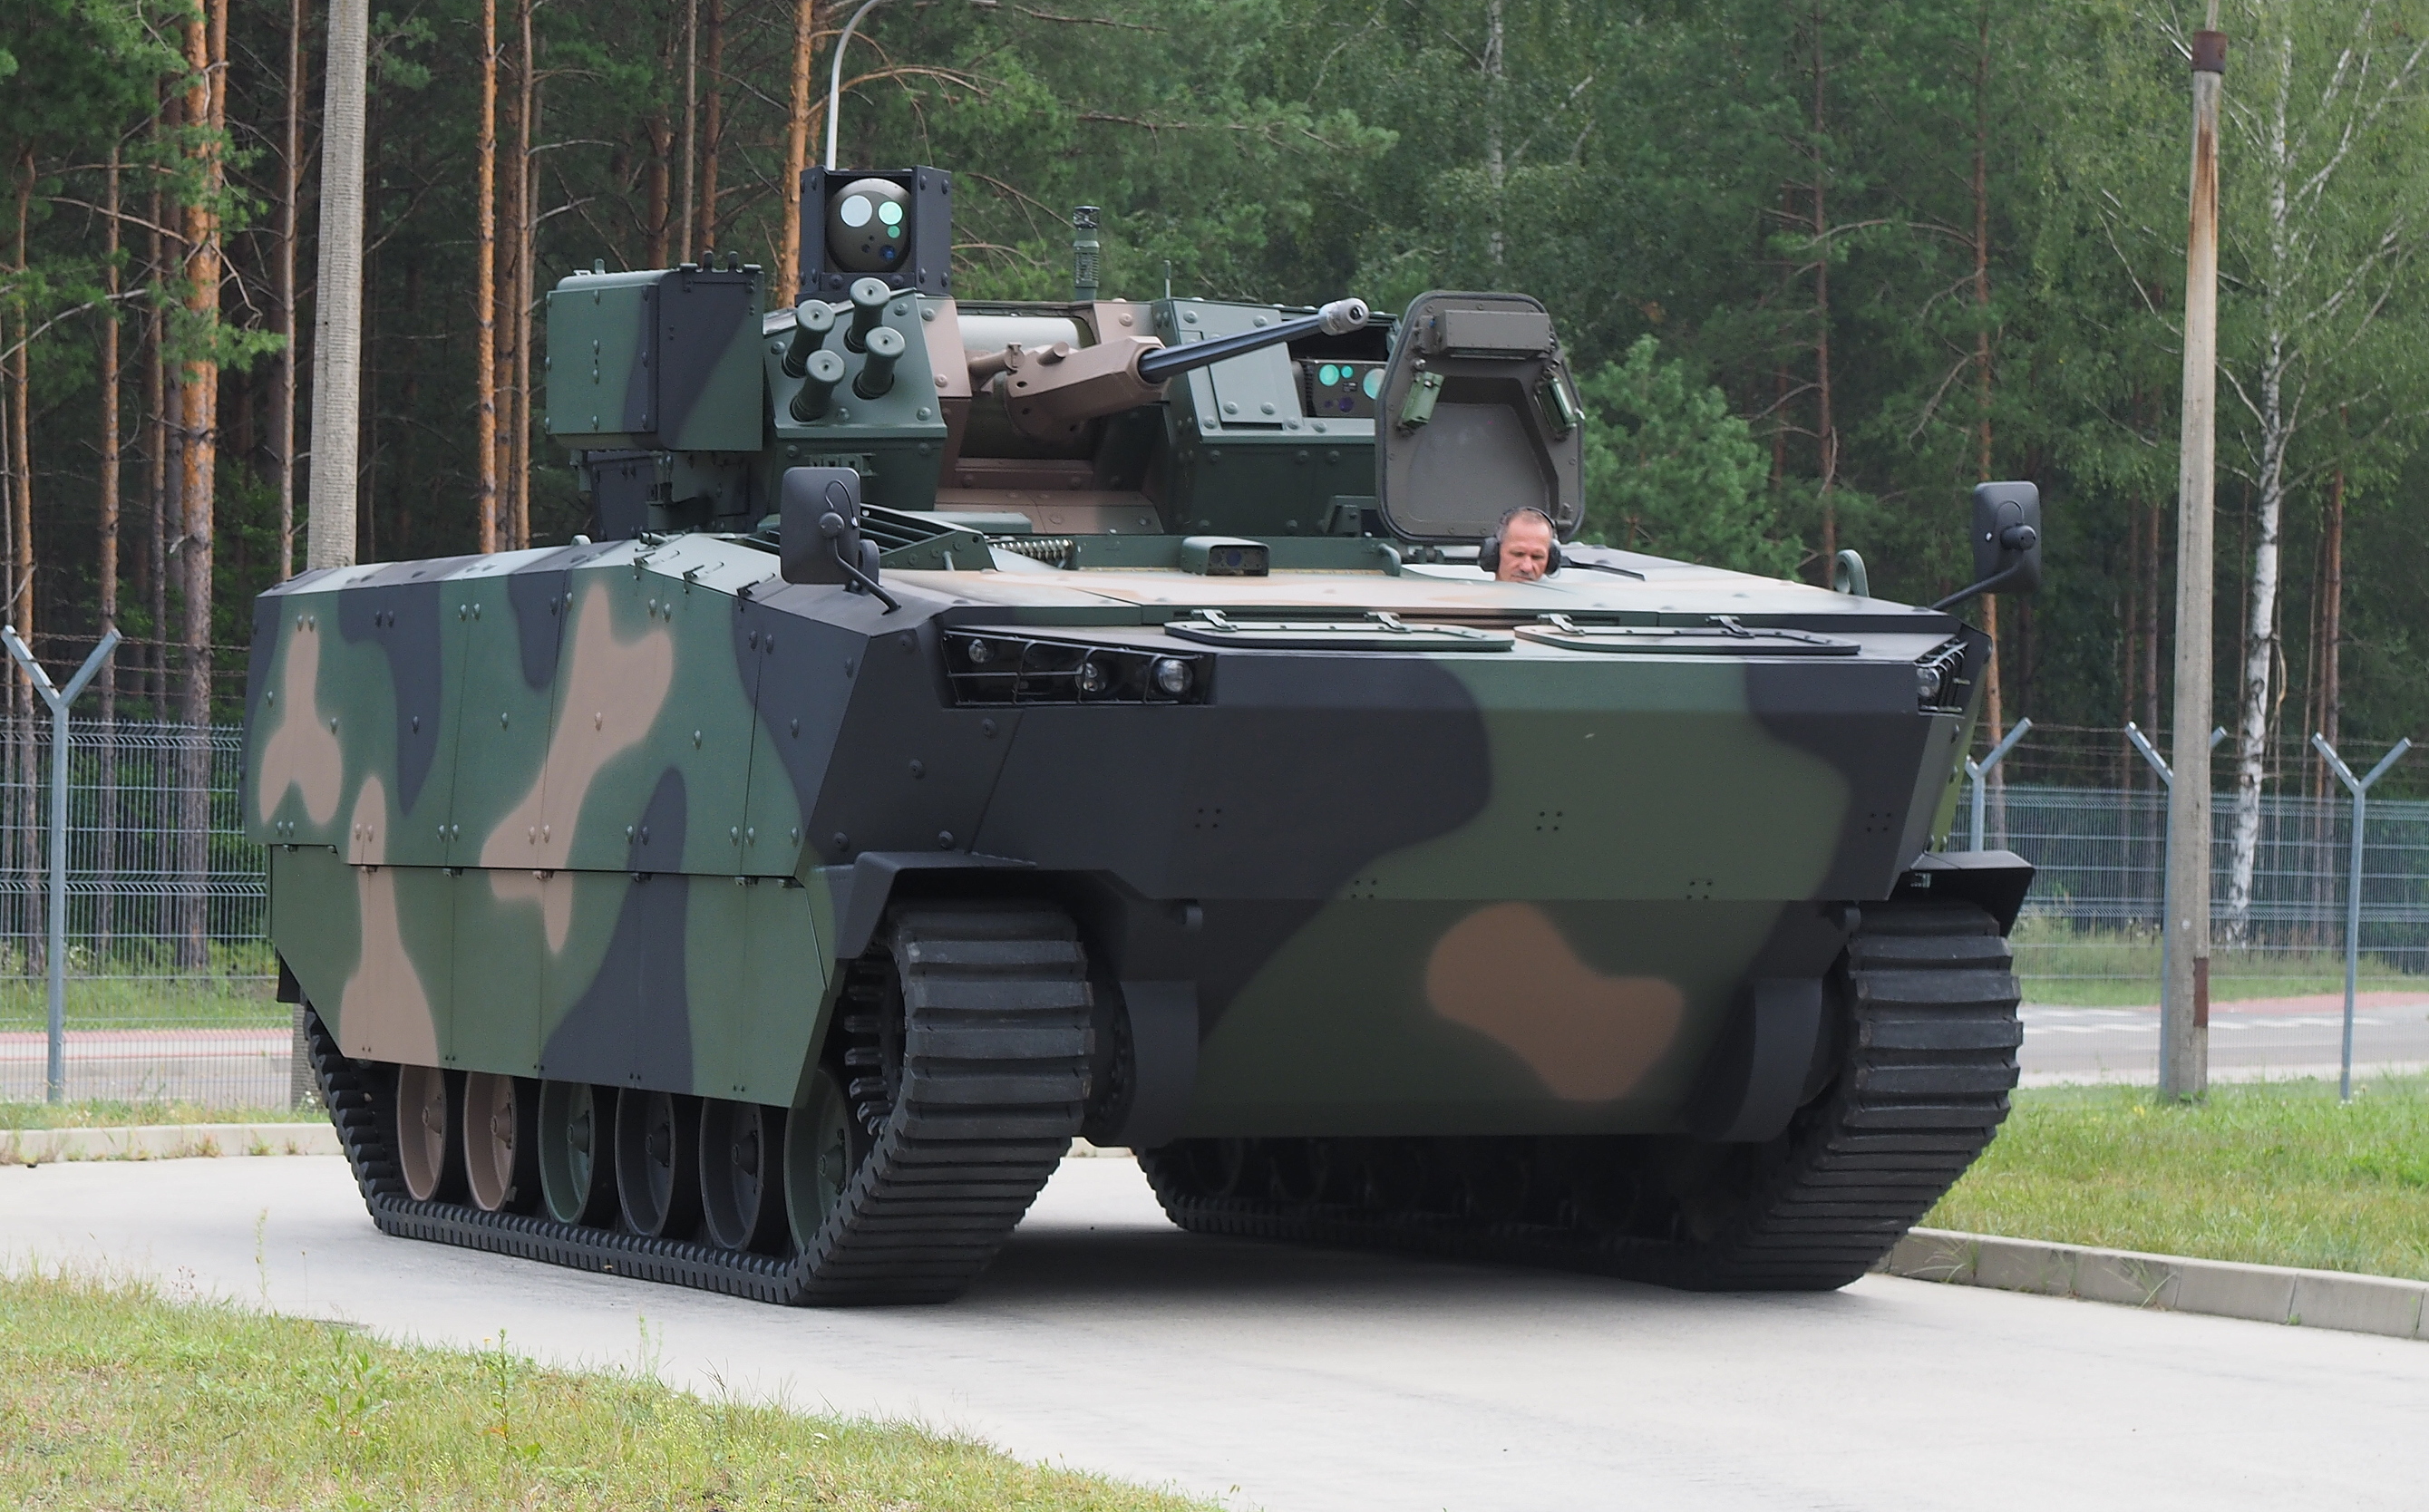 原创波兰国产步兵战车即将服役重装甲强火力将大规模列装能否延续翼